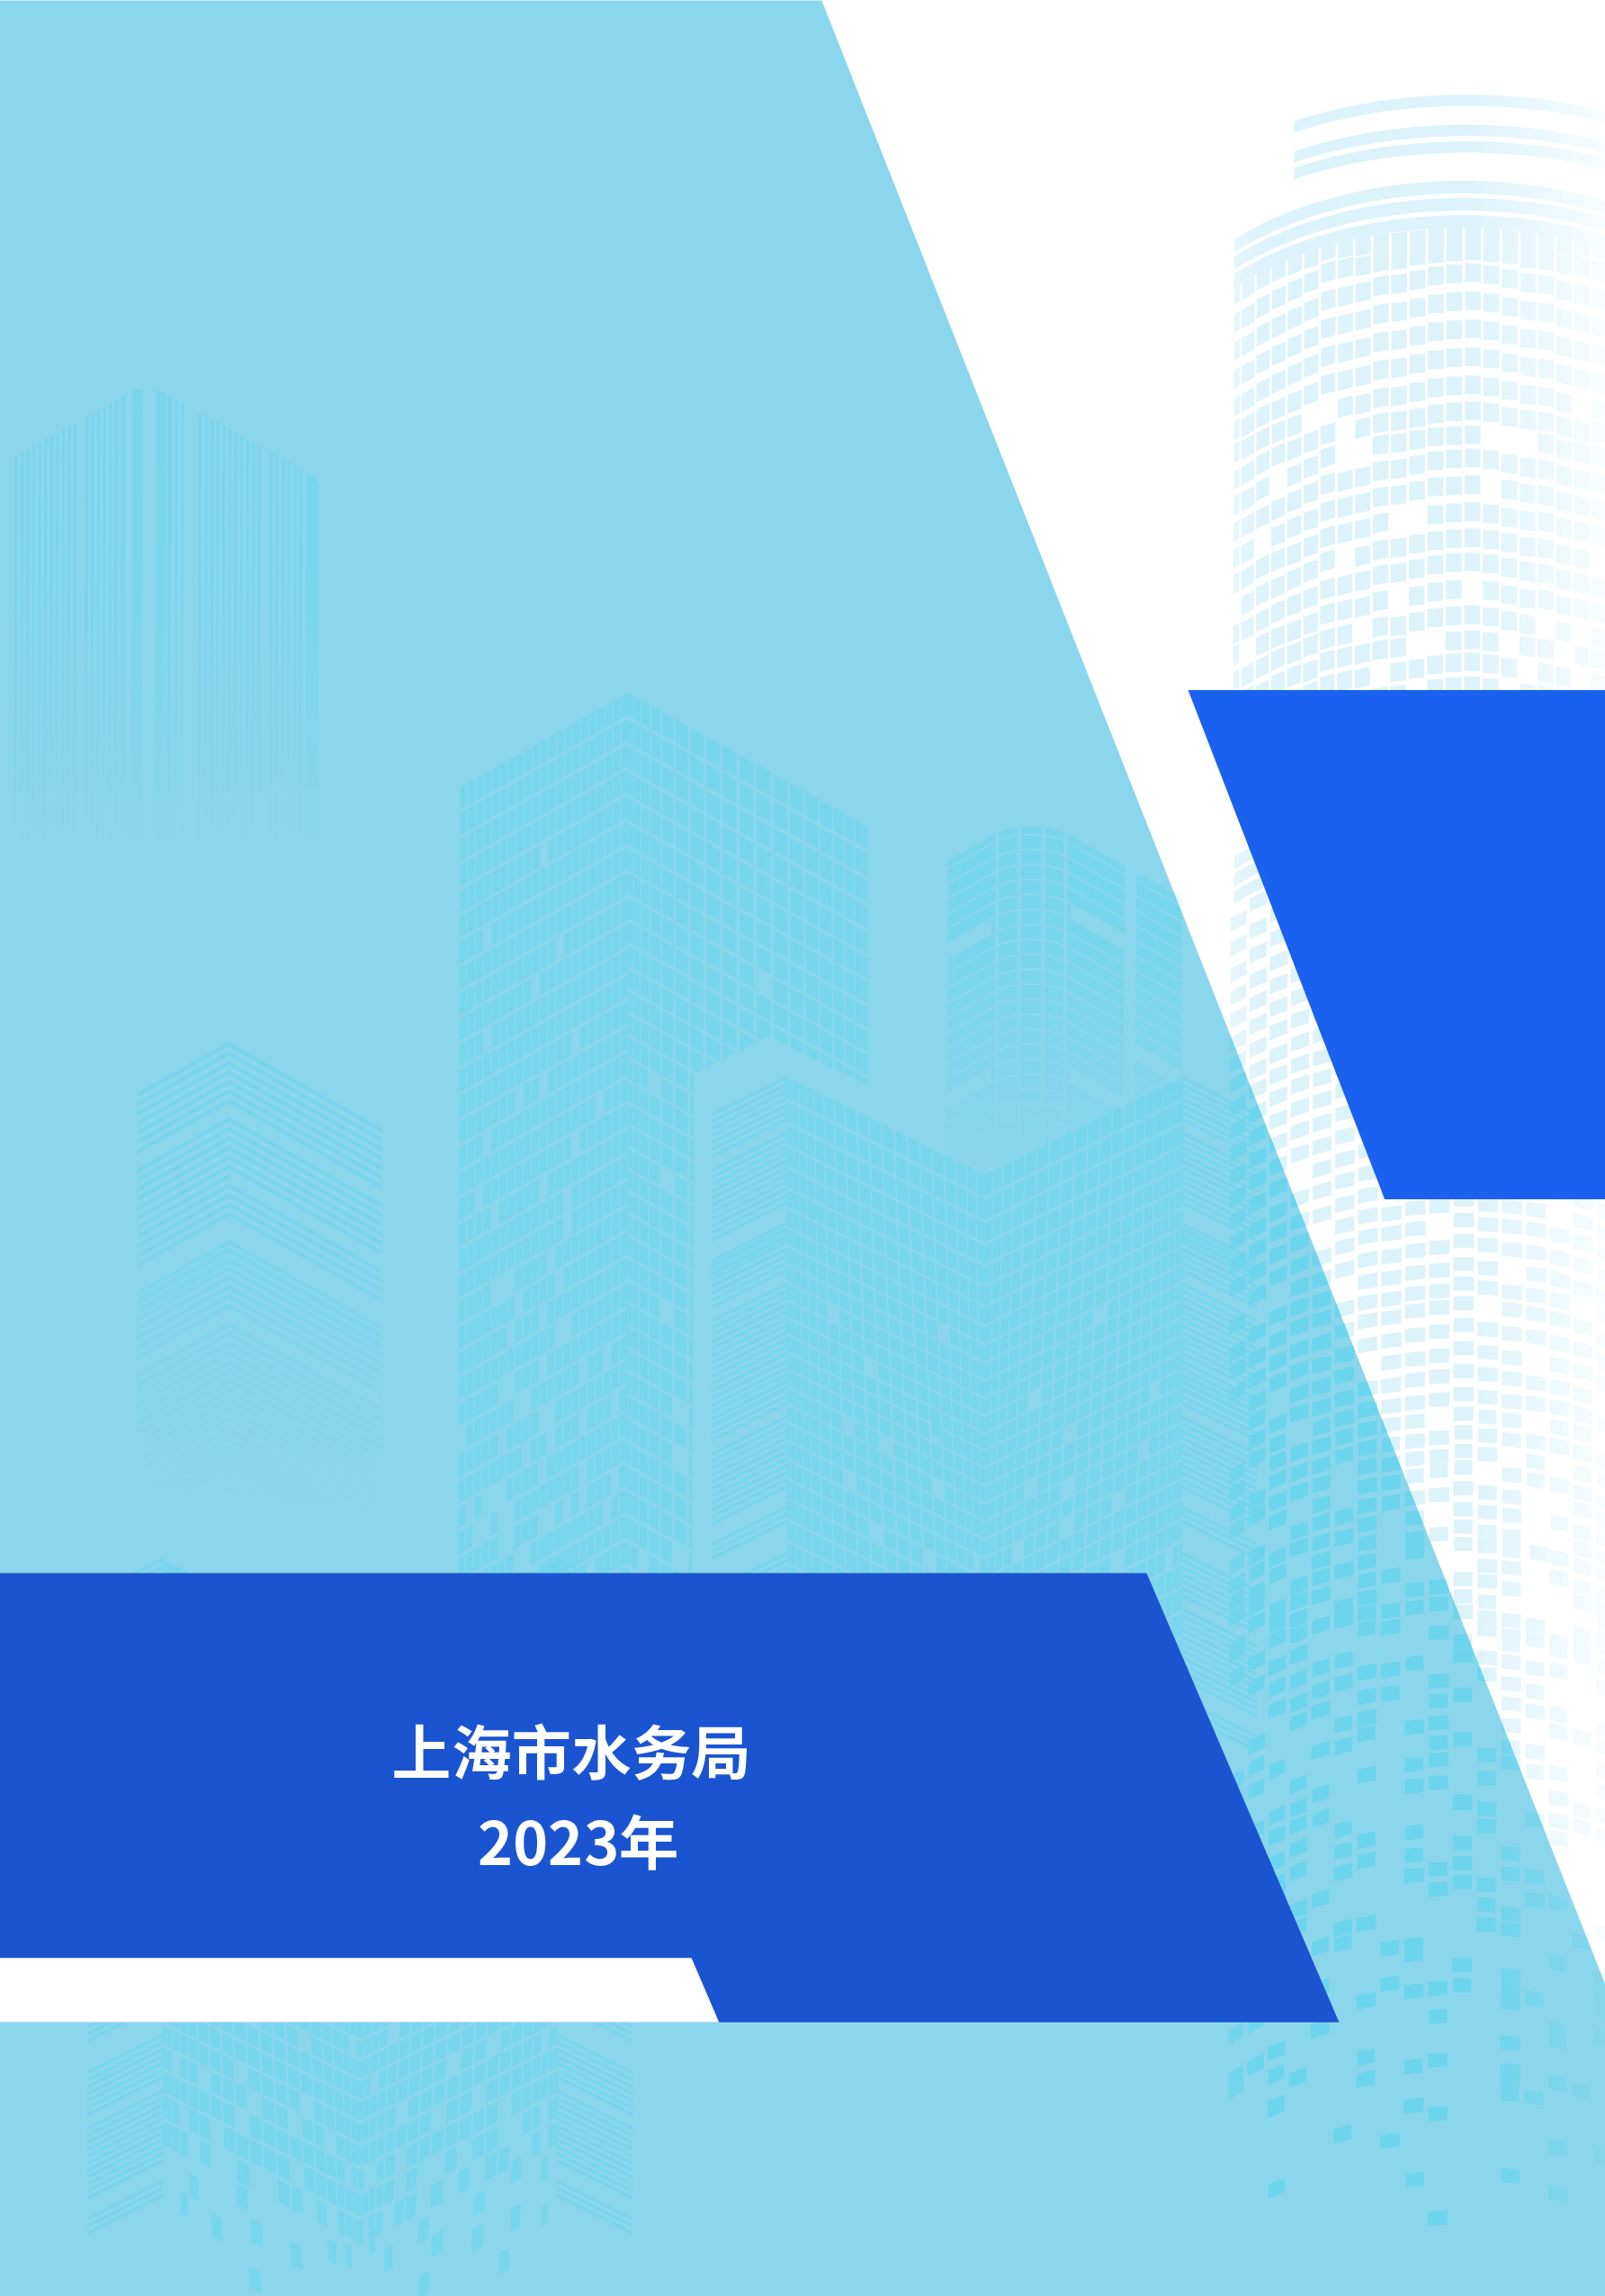 0515-上海供排水接入改革6.0版_页面_12.jpg